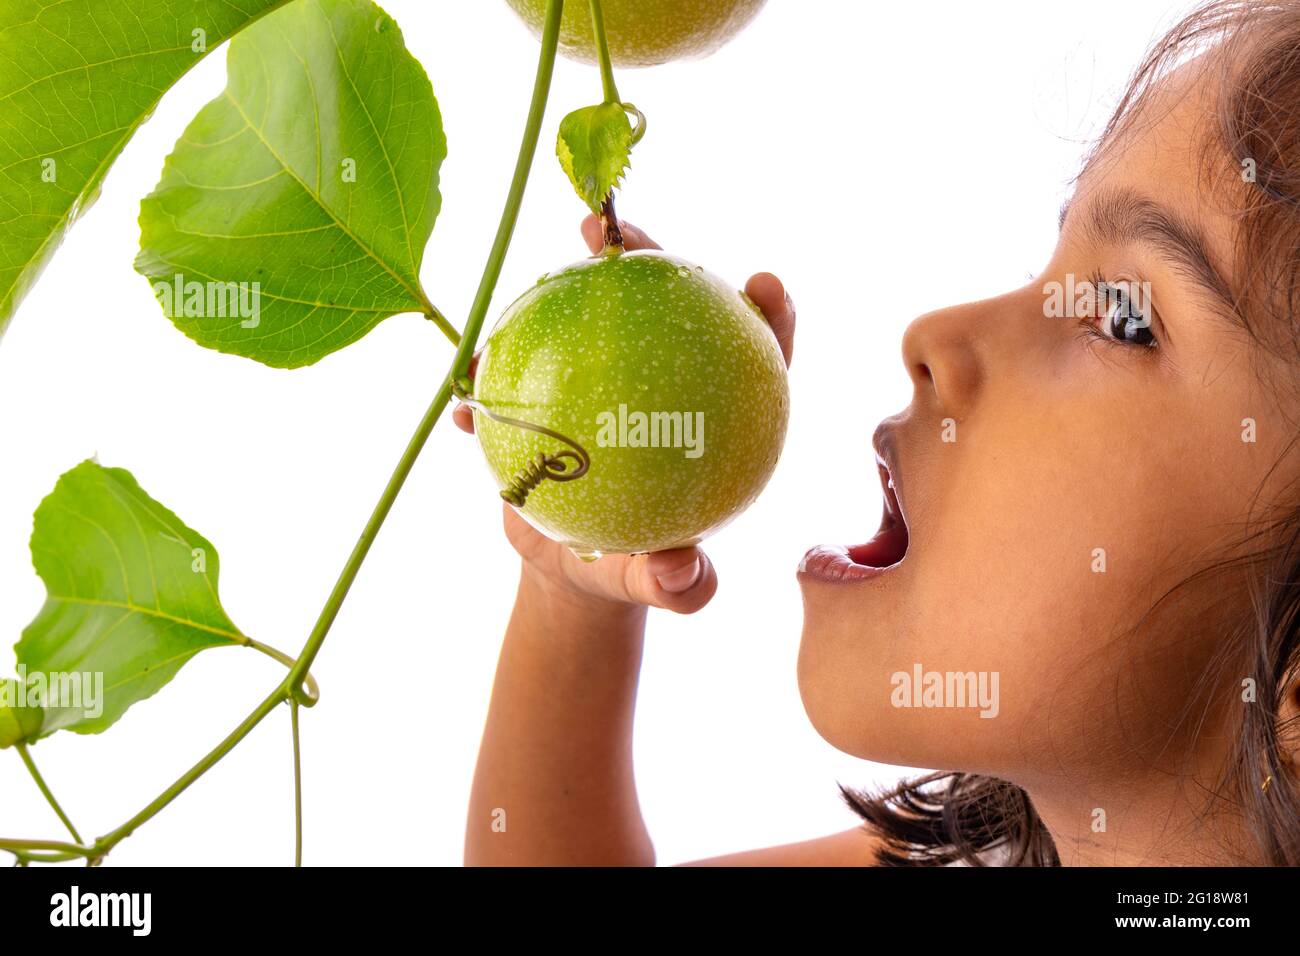 Une jeune fille essayant de mordre des fruits frais de la passion verte sur la vigne avec fond blanc, isolé Banque D'Images